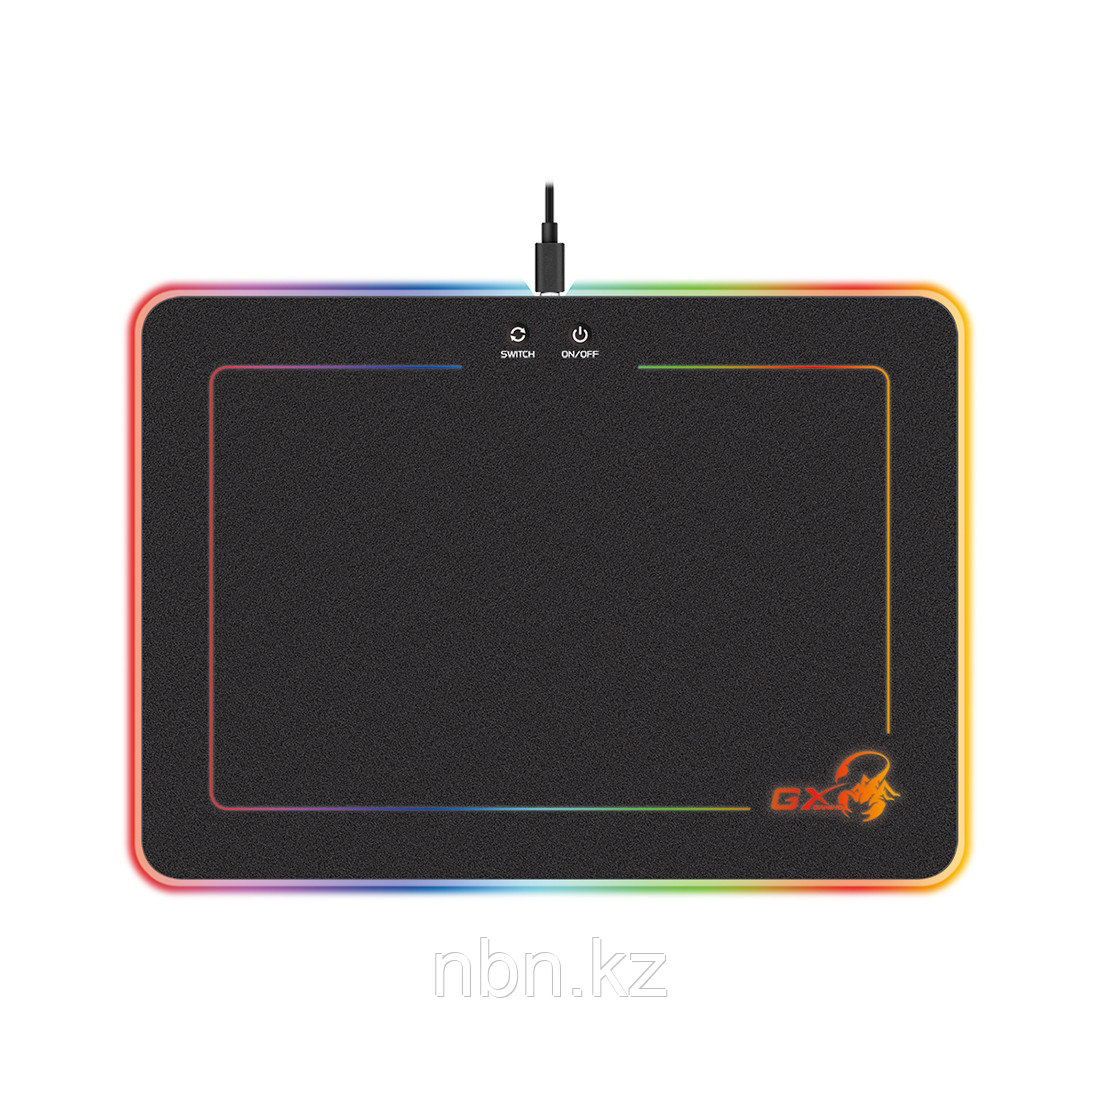 Коврик для компьютерной мыши Genius GX-Pad 600H RGB, фото 1